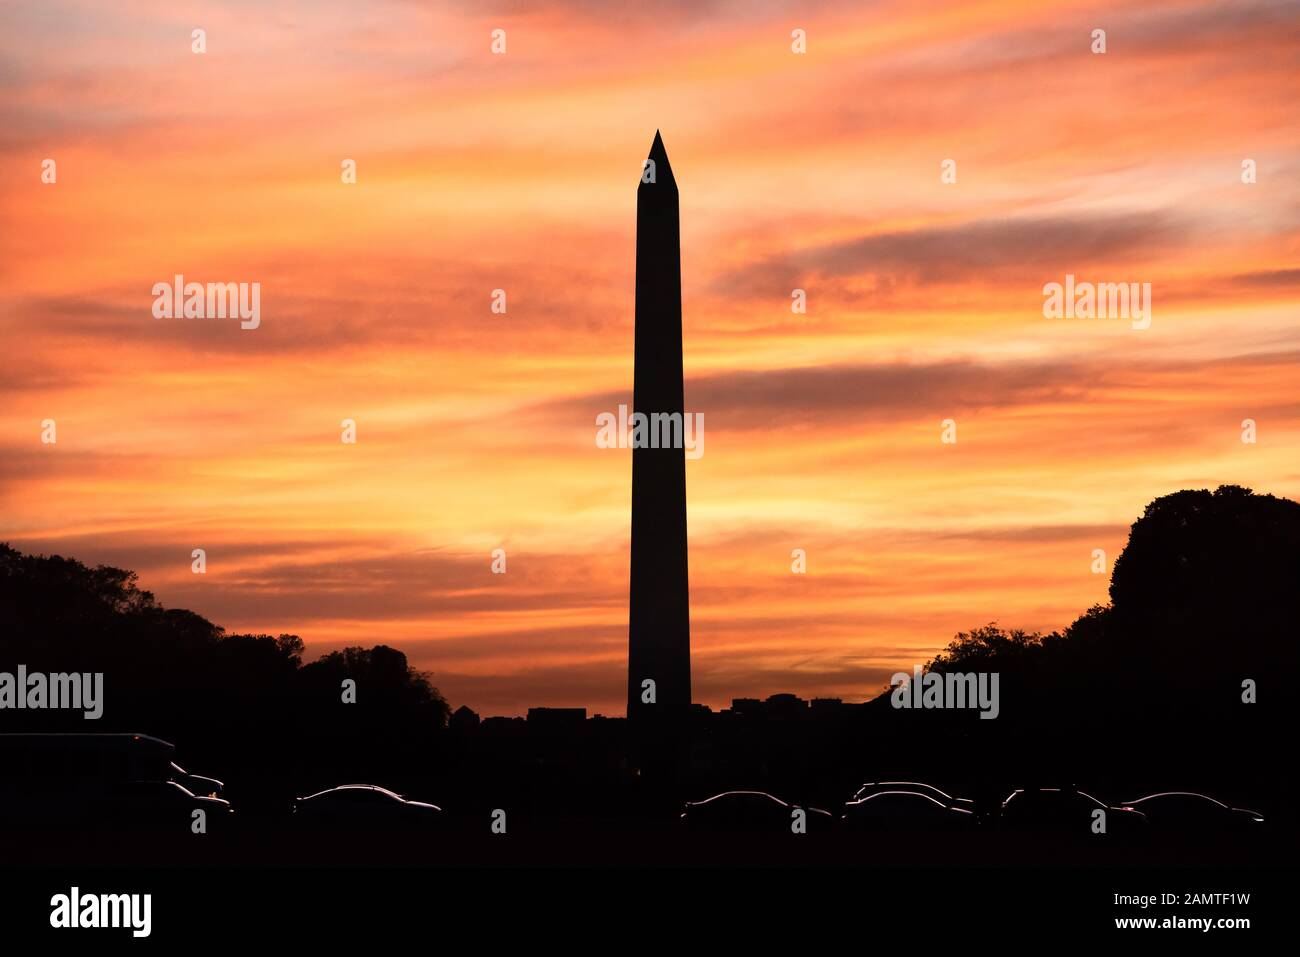 Silueta del Monumento a Washington al atardecer, Distrito de Columbia, Estados Unidos Foto de stock